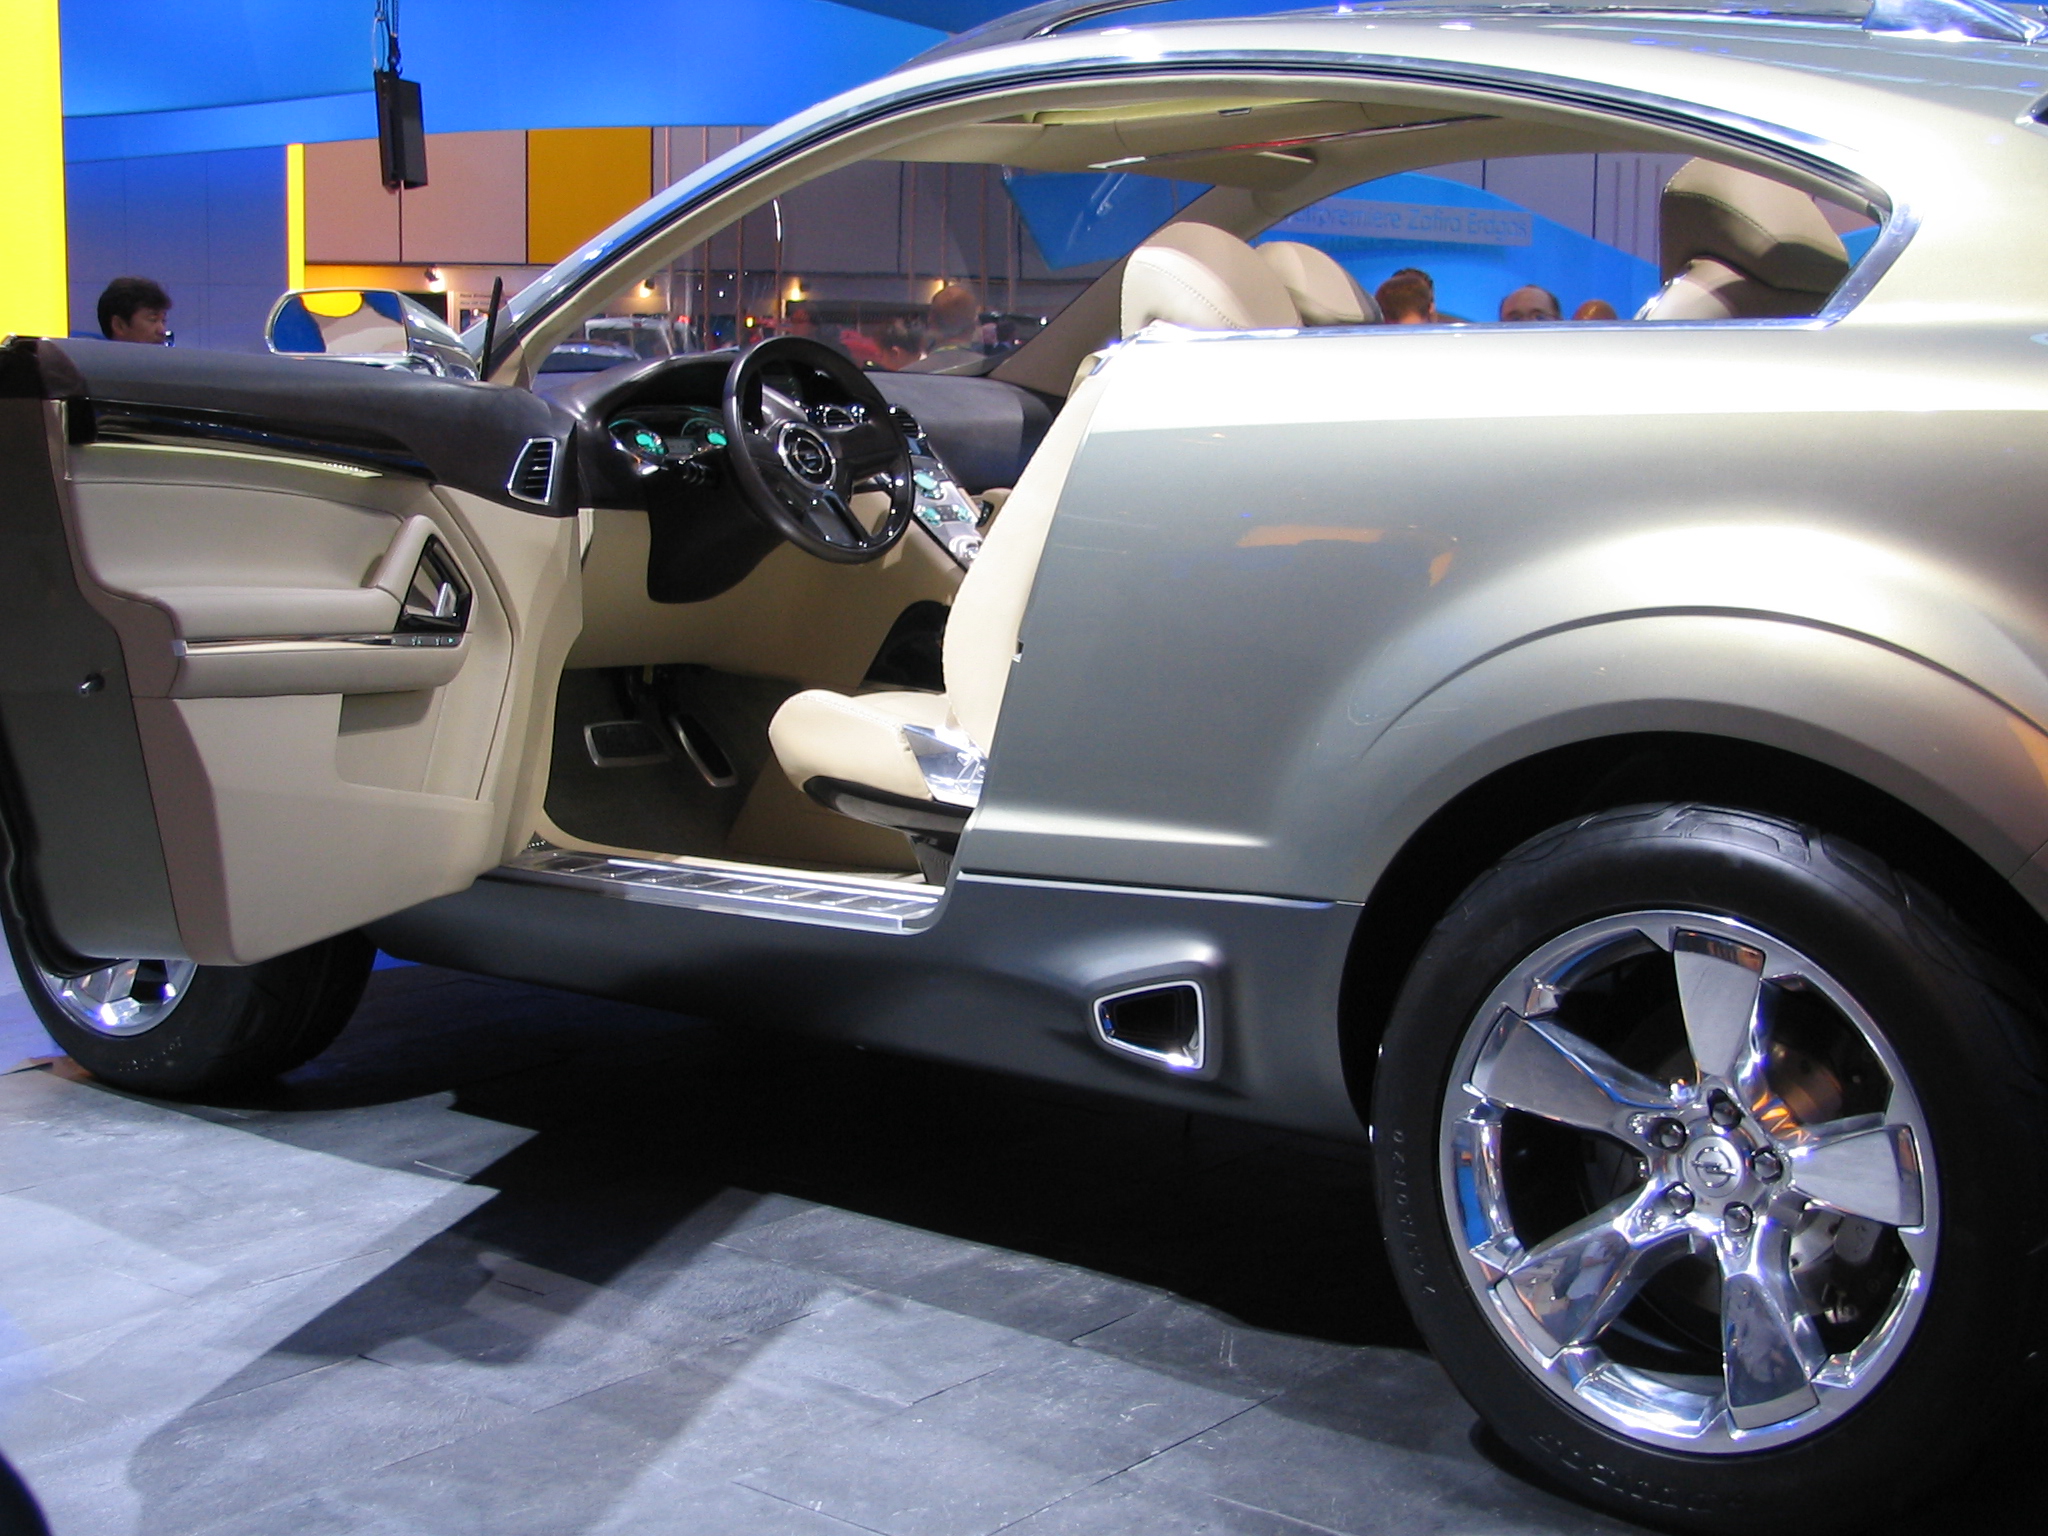 Opel Antara GTC inside | Flickr - Photo Sharing!